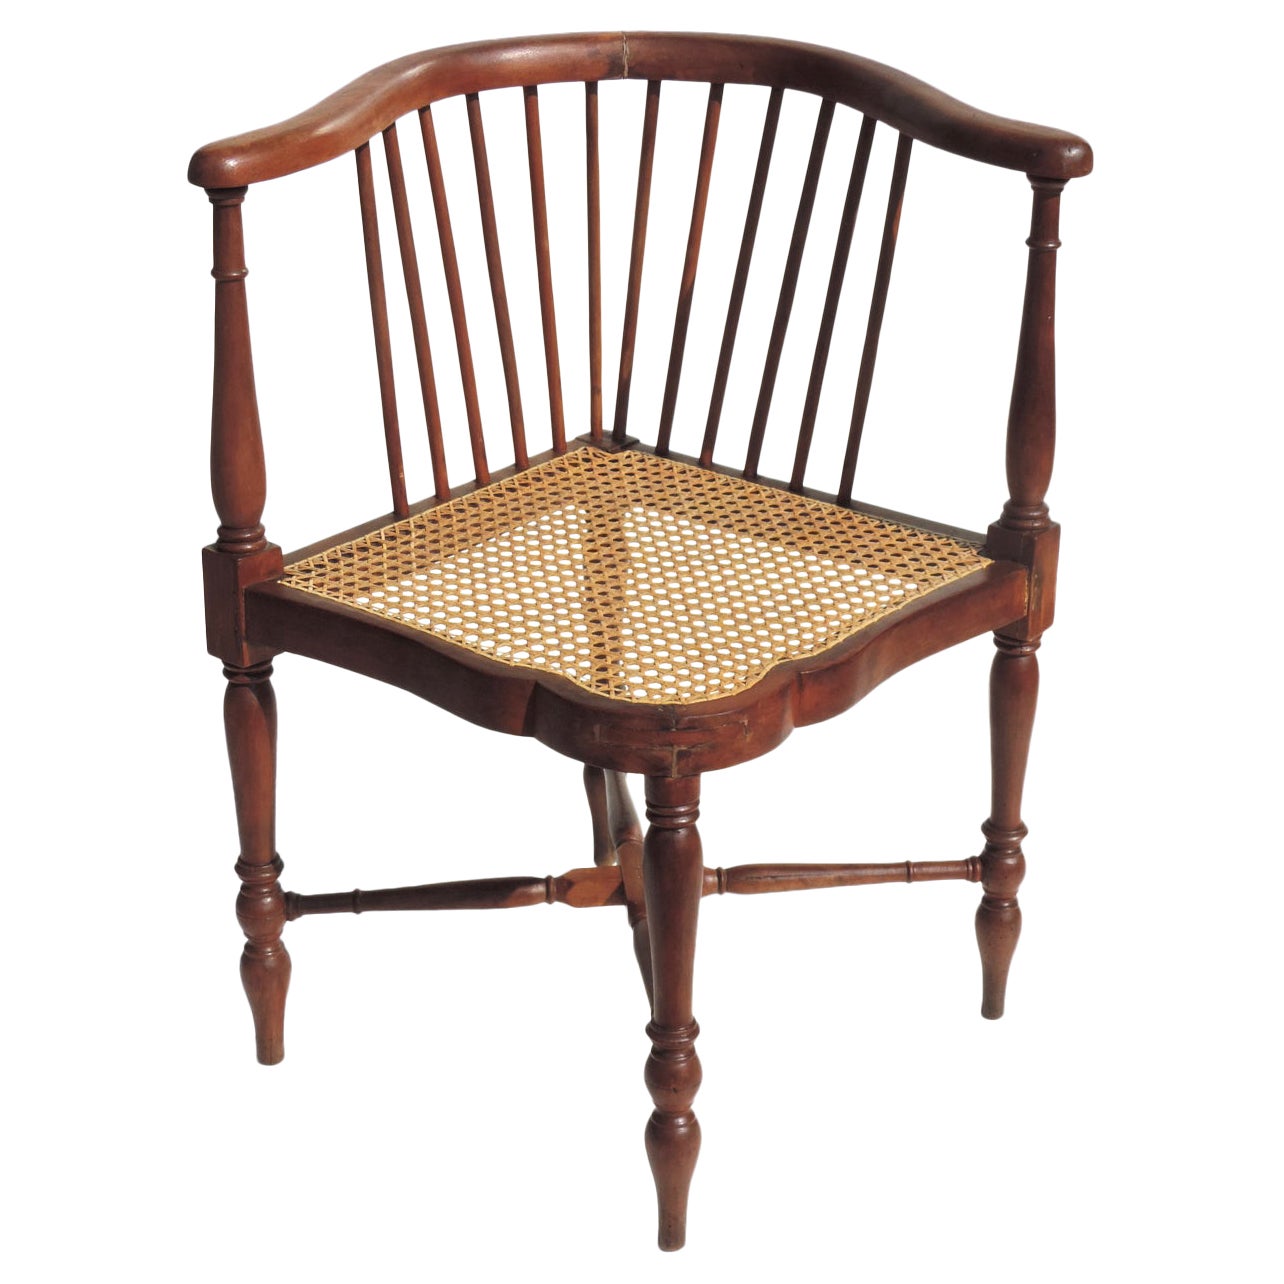 Adolf Loos F.O. Schmidt 1898-1900 Jugendstil Corner Chair